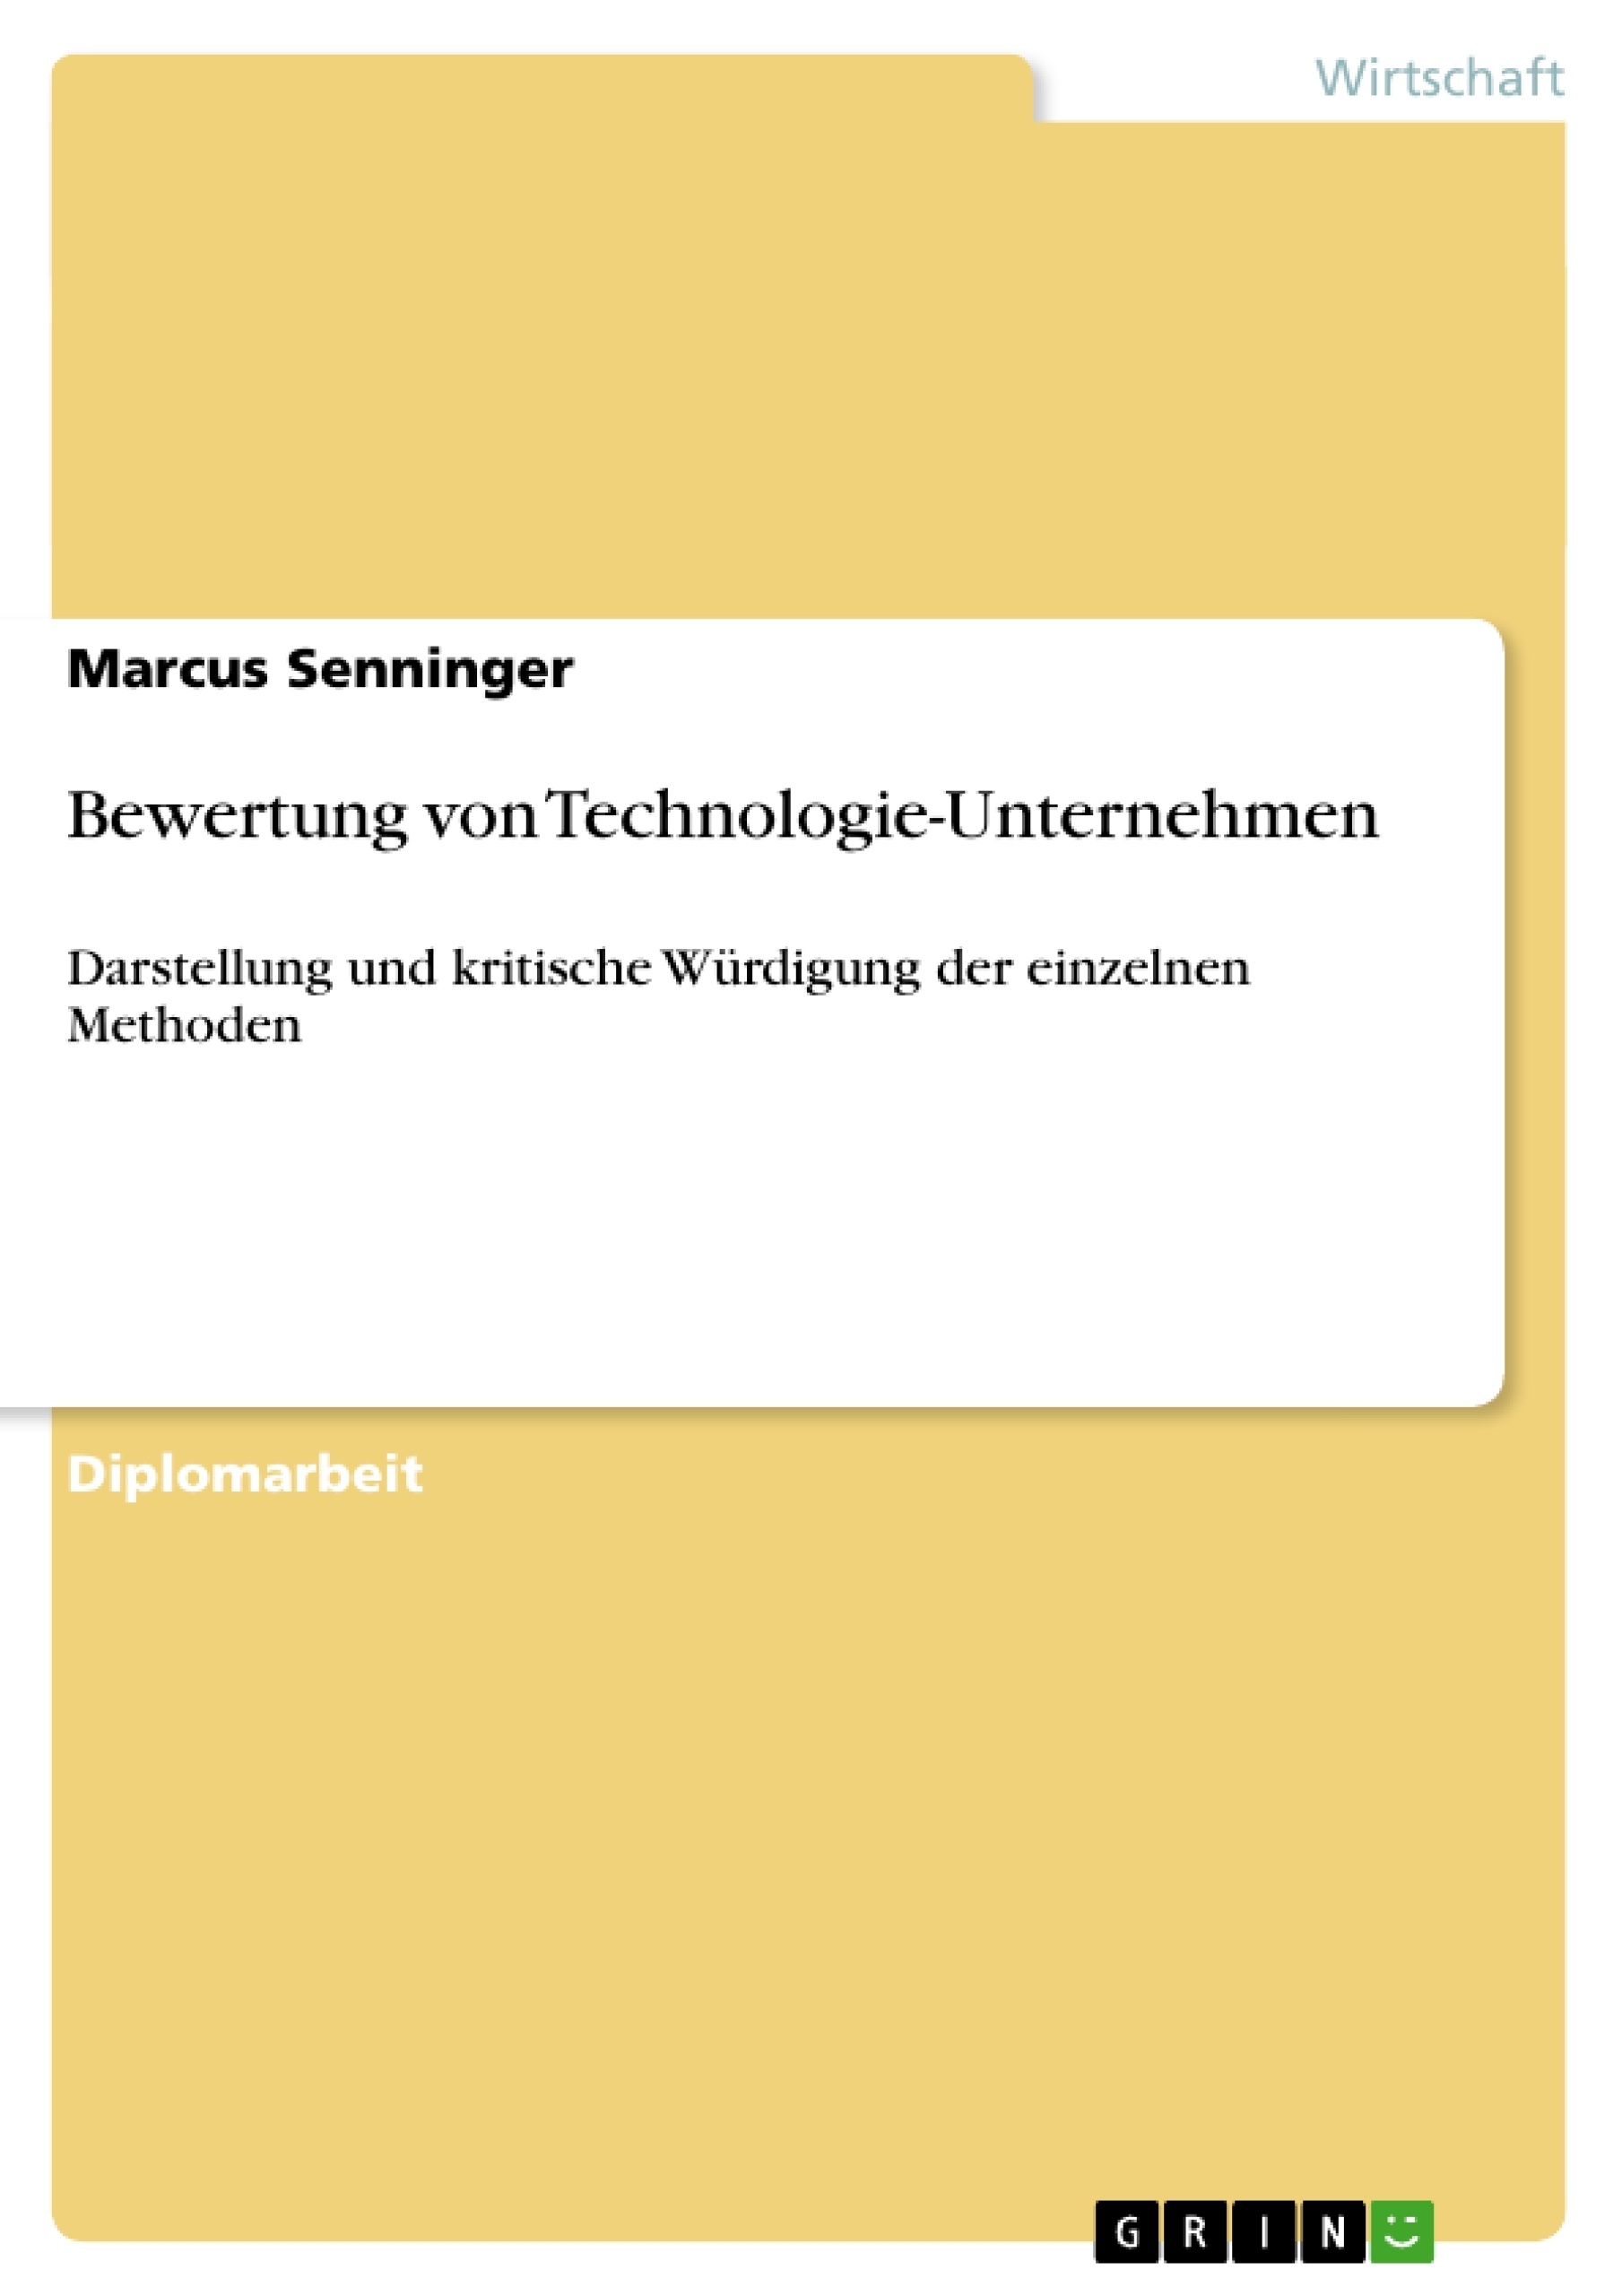 Title: Bewertung von Technologie-Unternehmen